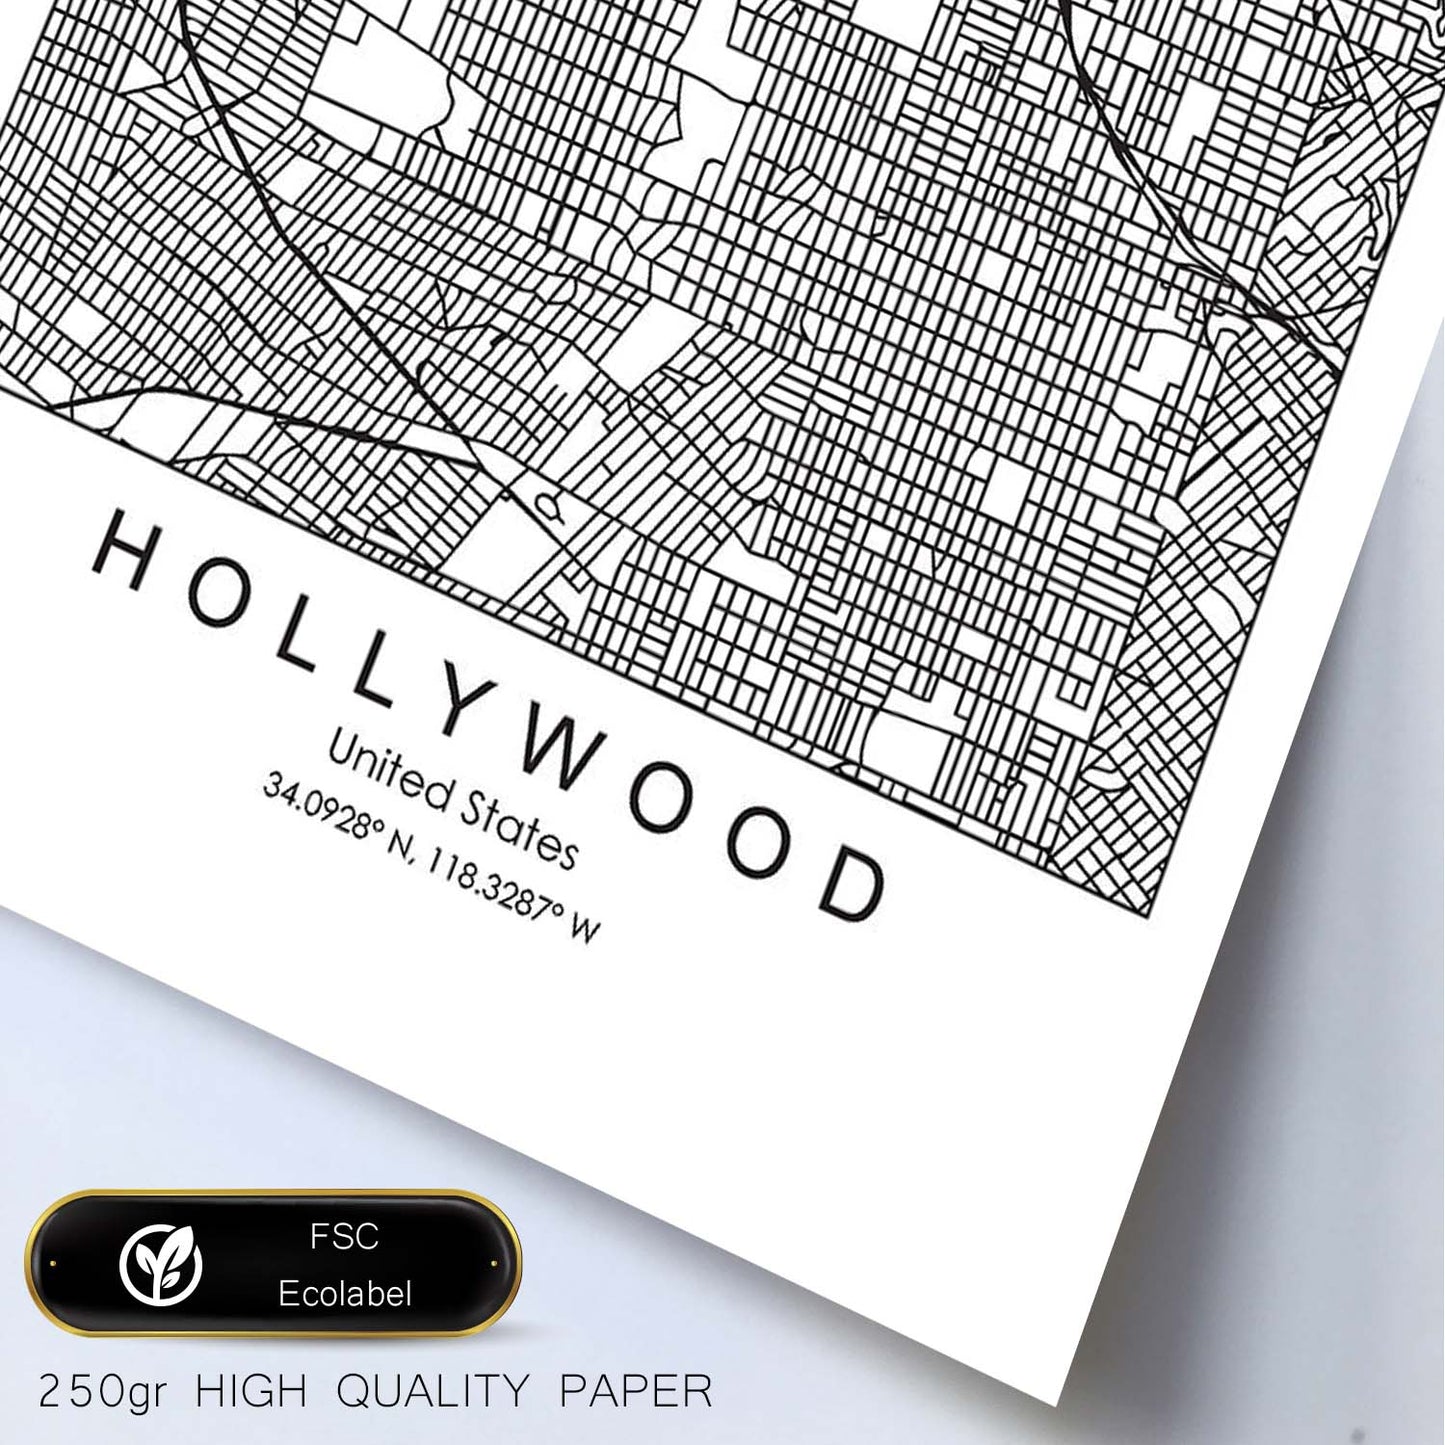 Poster con mapa de Hollywood. Lámina de Estados Unidos, con imágenes de mapas y carreteras-Artwork-Nacnic-Nacnic Estudio SL